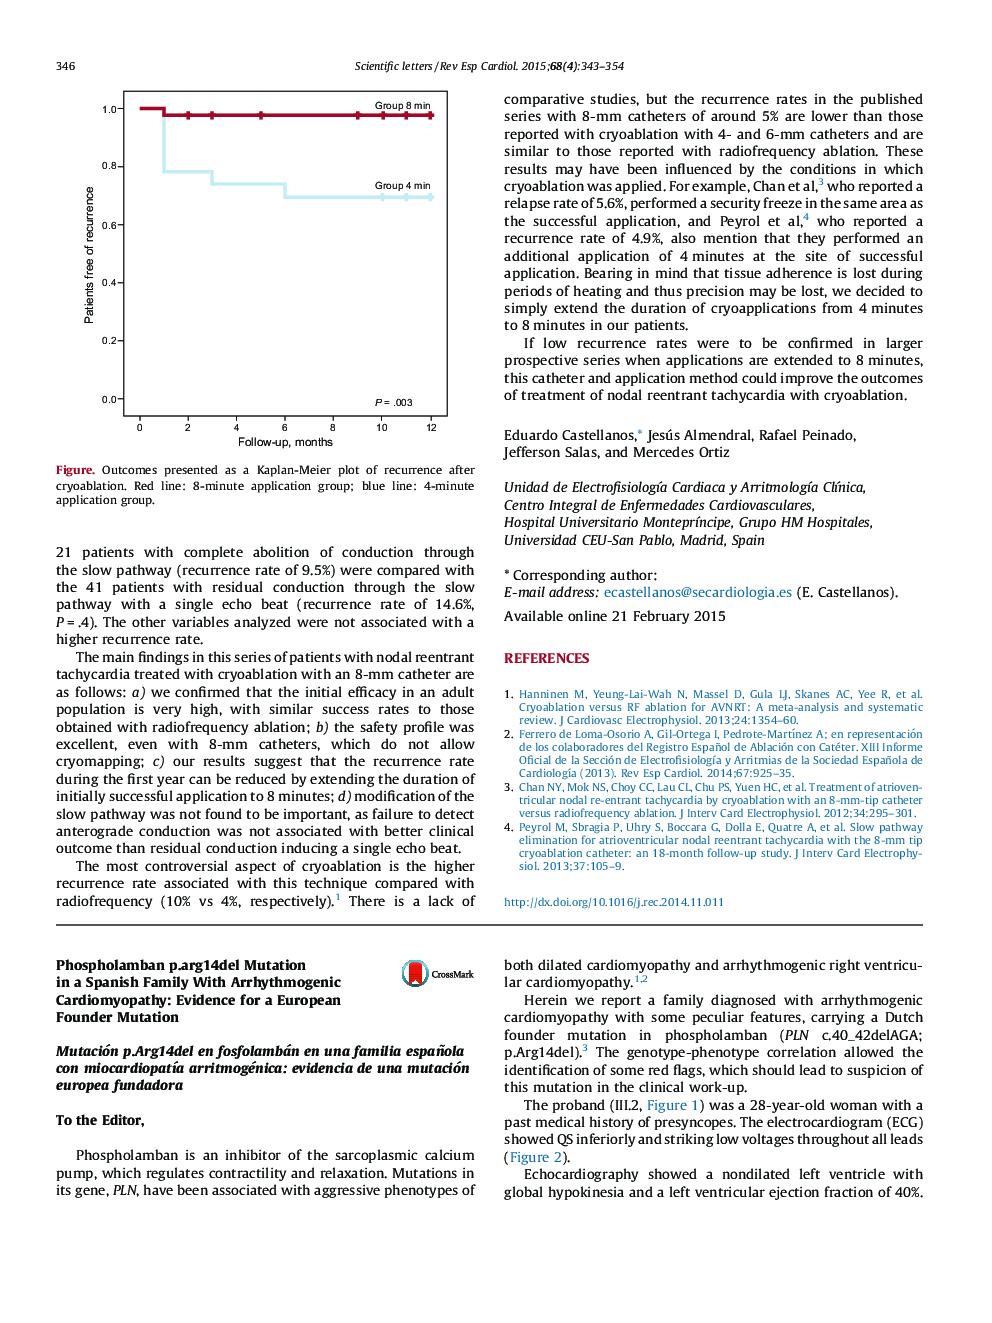 Phospholamban p.arg14del Mutation in a Spanish Family With Arrhythmogenic Cardiomyopathy: Evidence for a European Founder Mutation